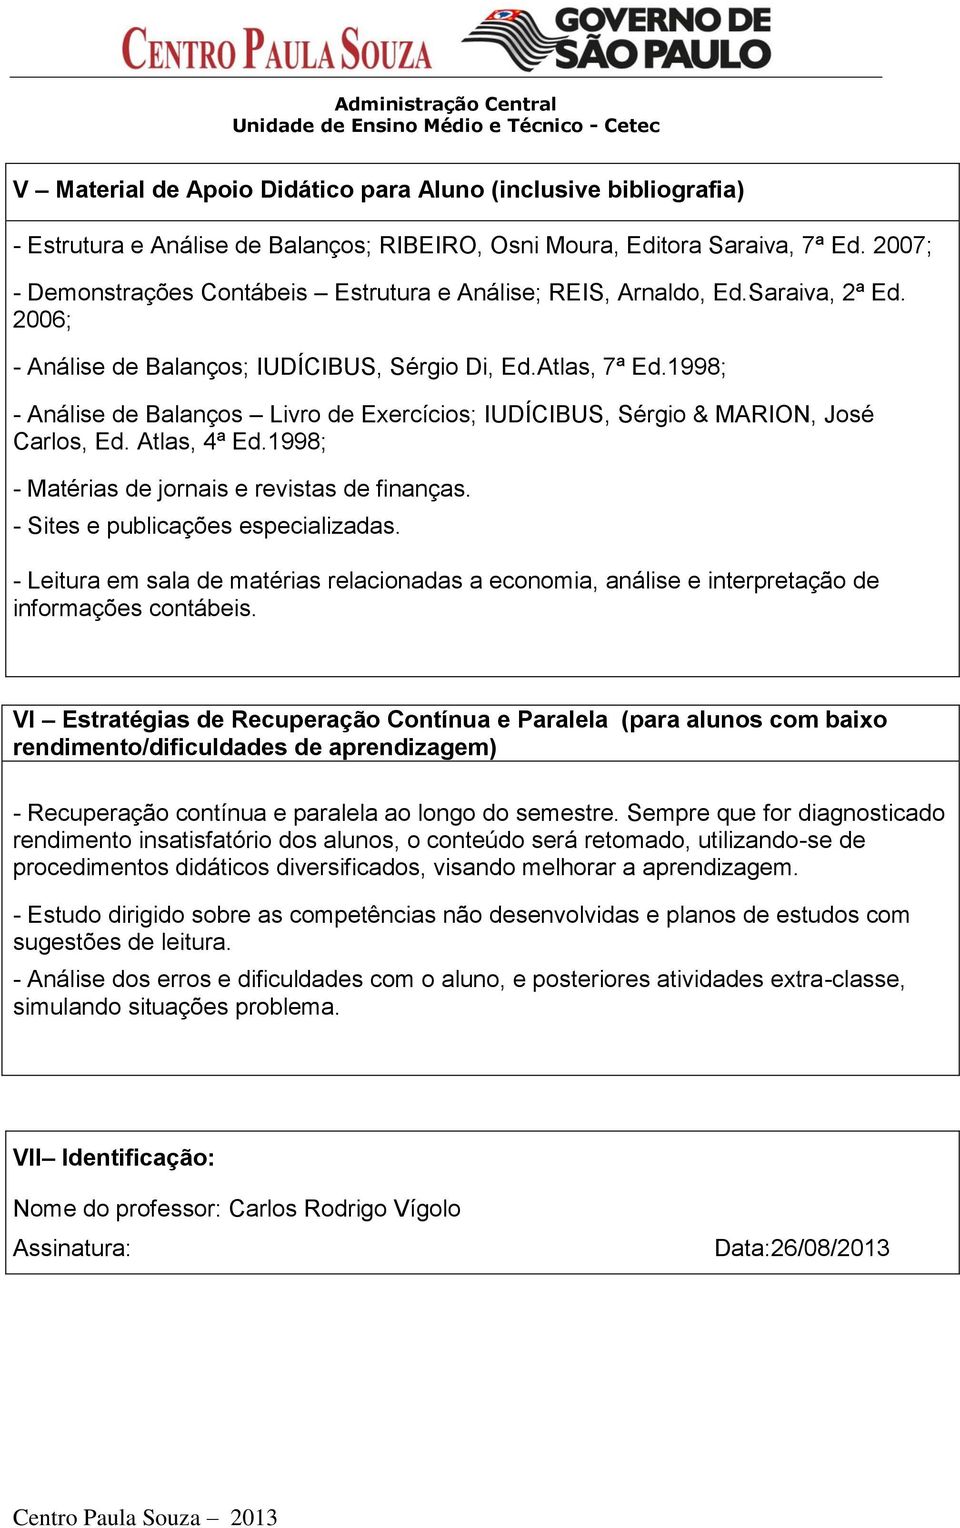 1998; - Análise de Balanços Livro de Exercícios; IUDÍCIBUS, Sérgio & MARION, José Carlos, Ed. Atlas, 4ª Ed.1998; - Matérias de jornais e revistas de finanças. - Sites e publicações especializadas.